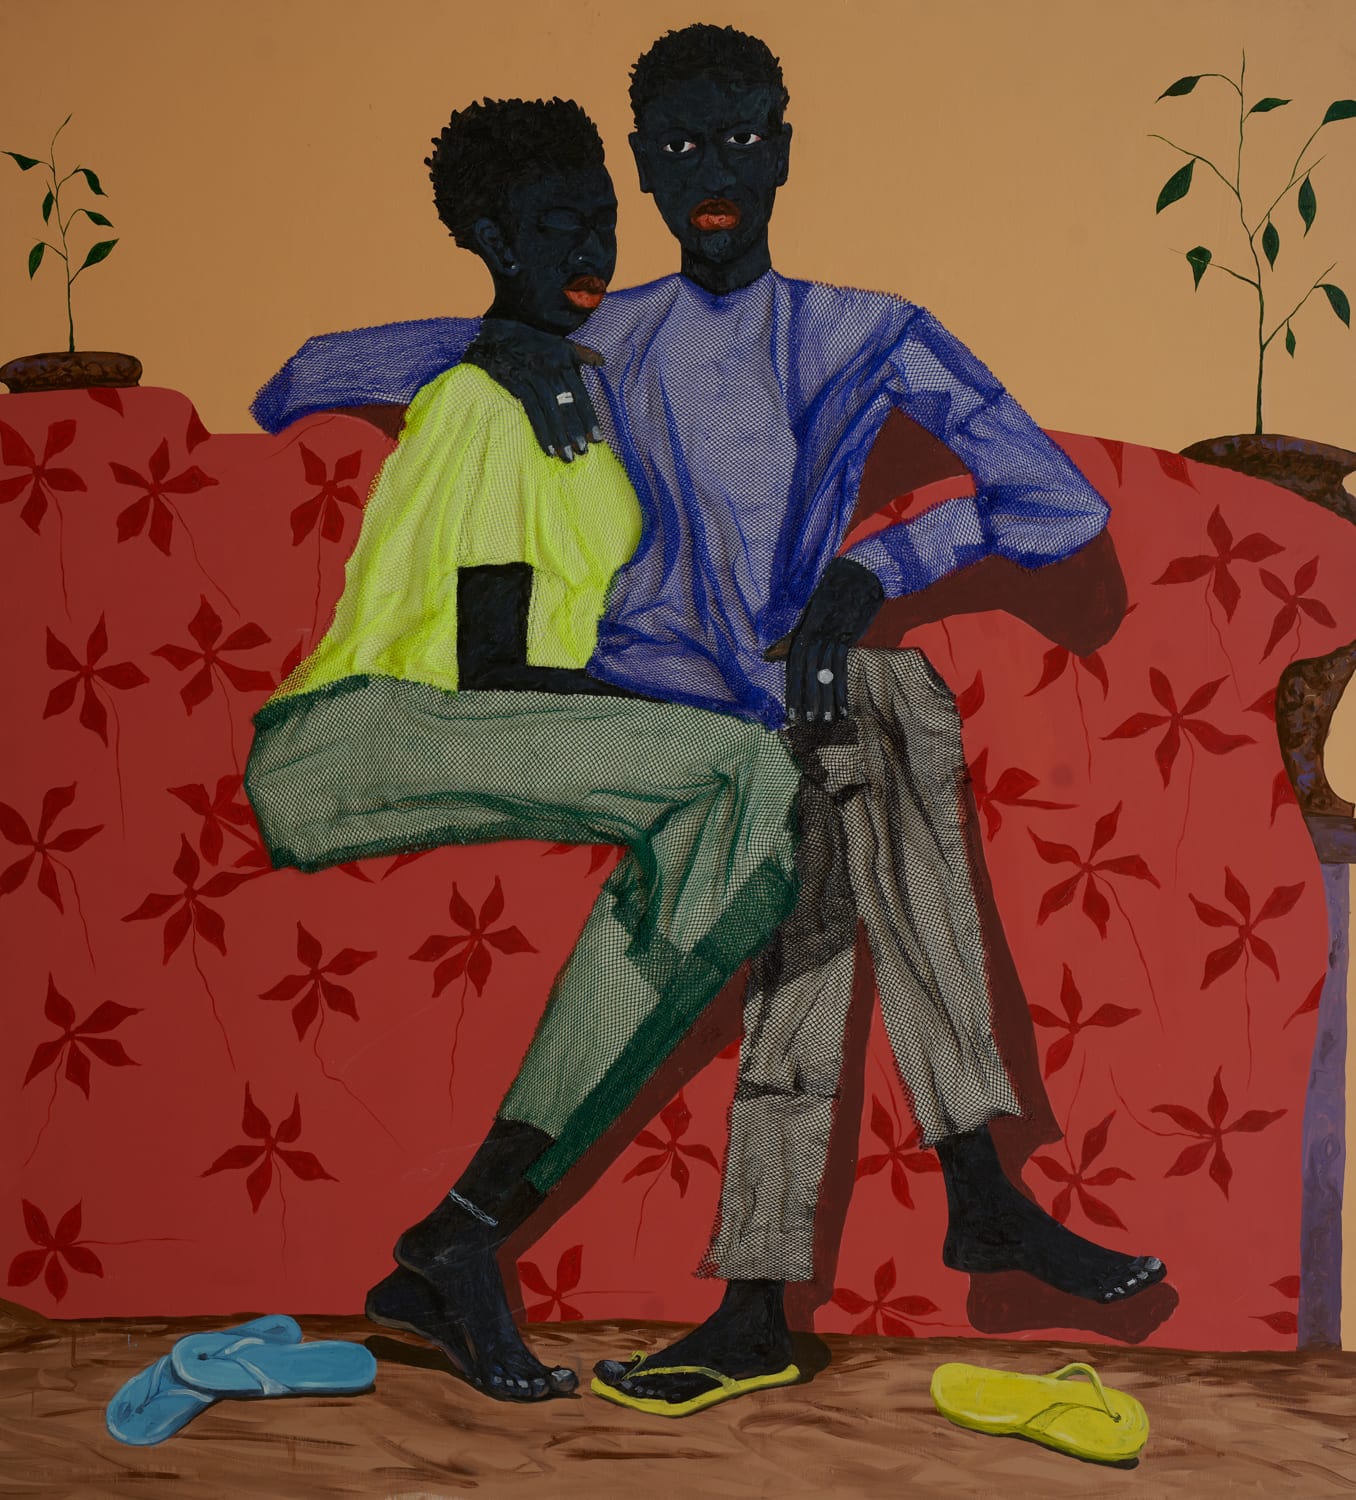 Eric Adjei Tawiah, Lovers Bench, 2020